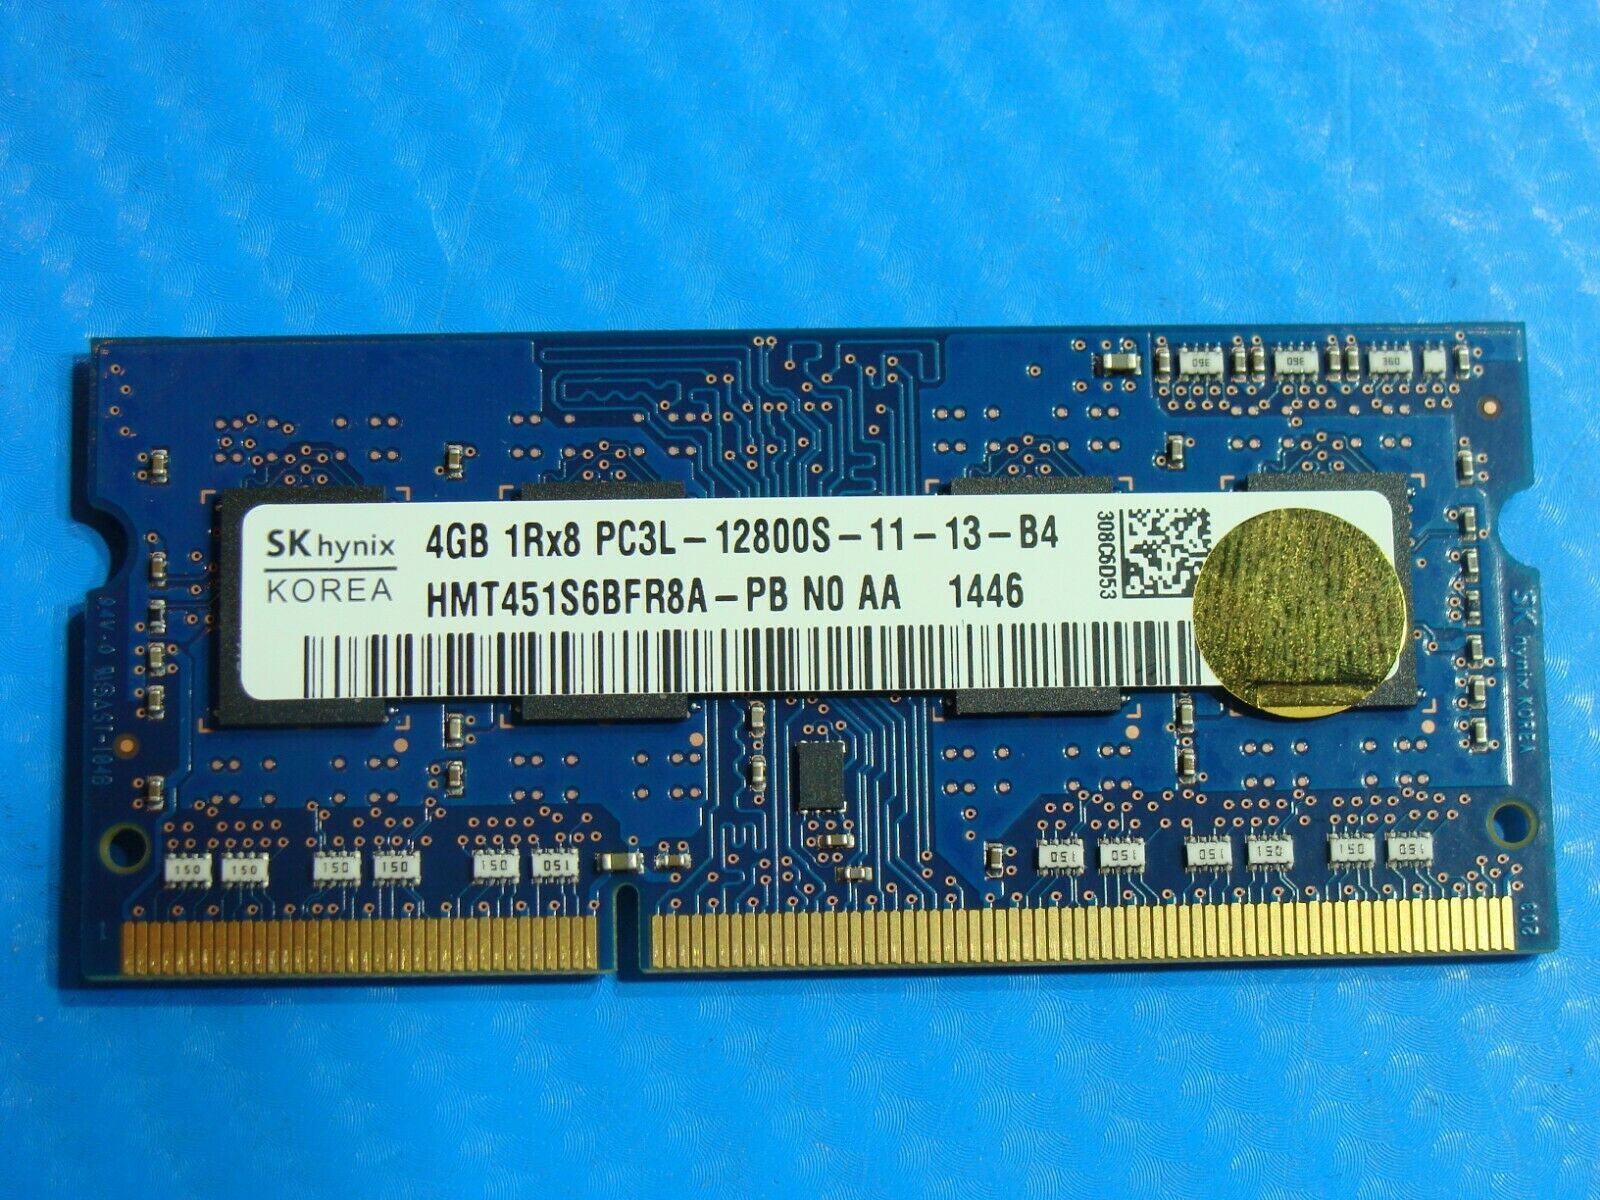 Asus TP500LA-US51T SO-DIMM SK Hynix 4GB Memory RAM PC3L-12800S HMT451S6BFR8A-PB - Laptop Parts - Buy Authentic Computer Parts - Top Seller Ebay